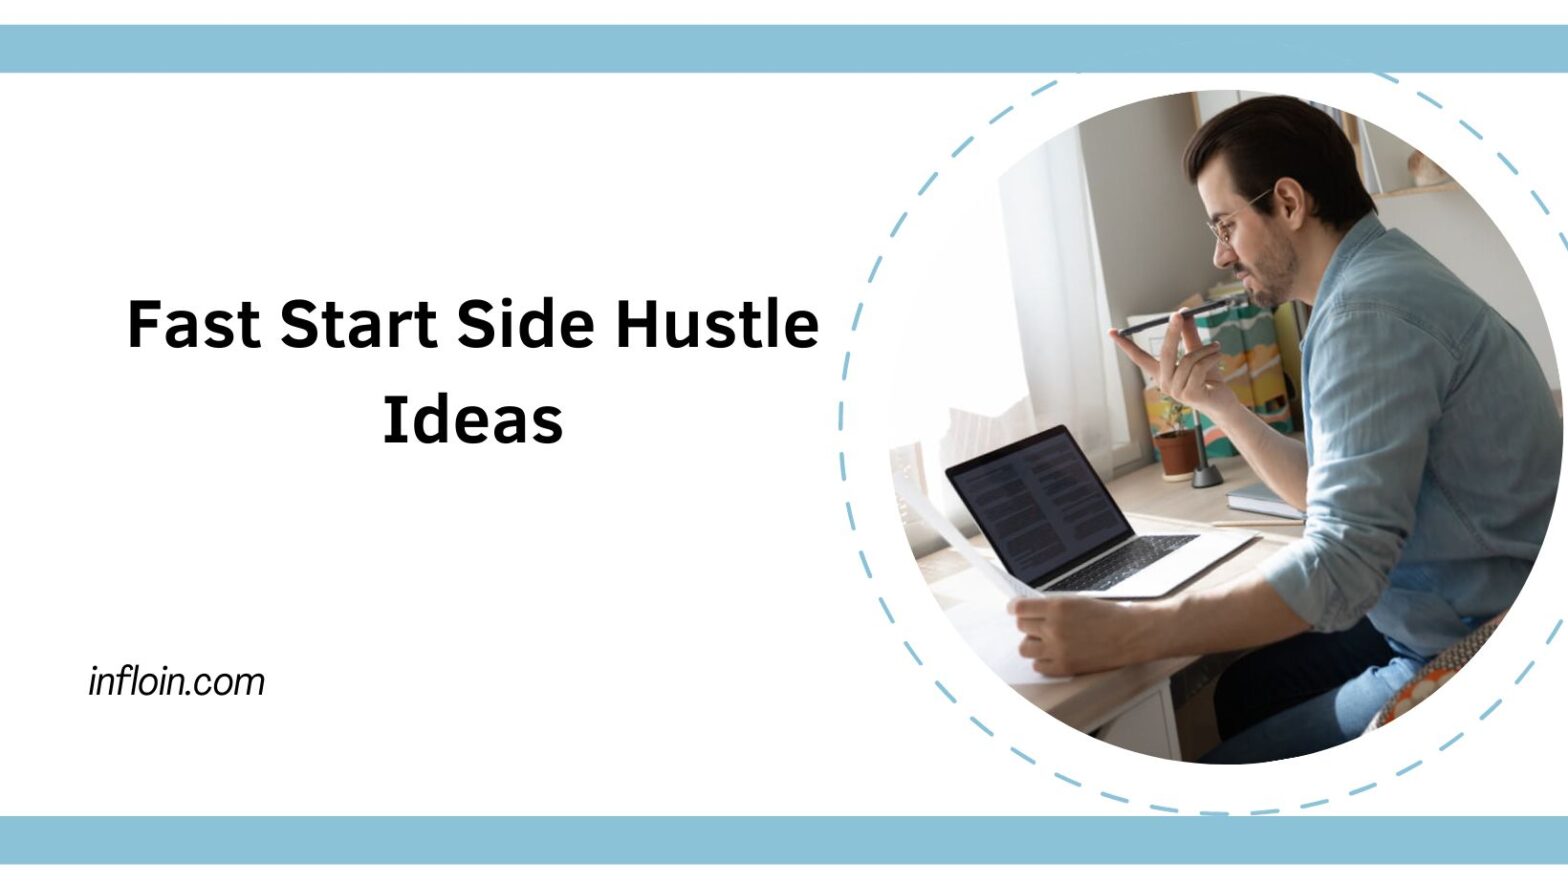 Fast Start Side Hustle Ideas